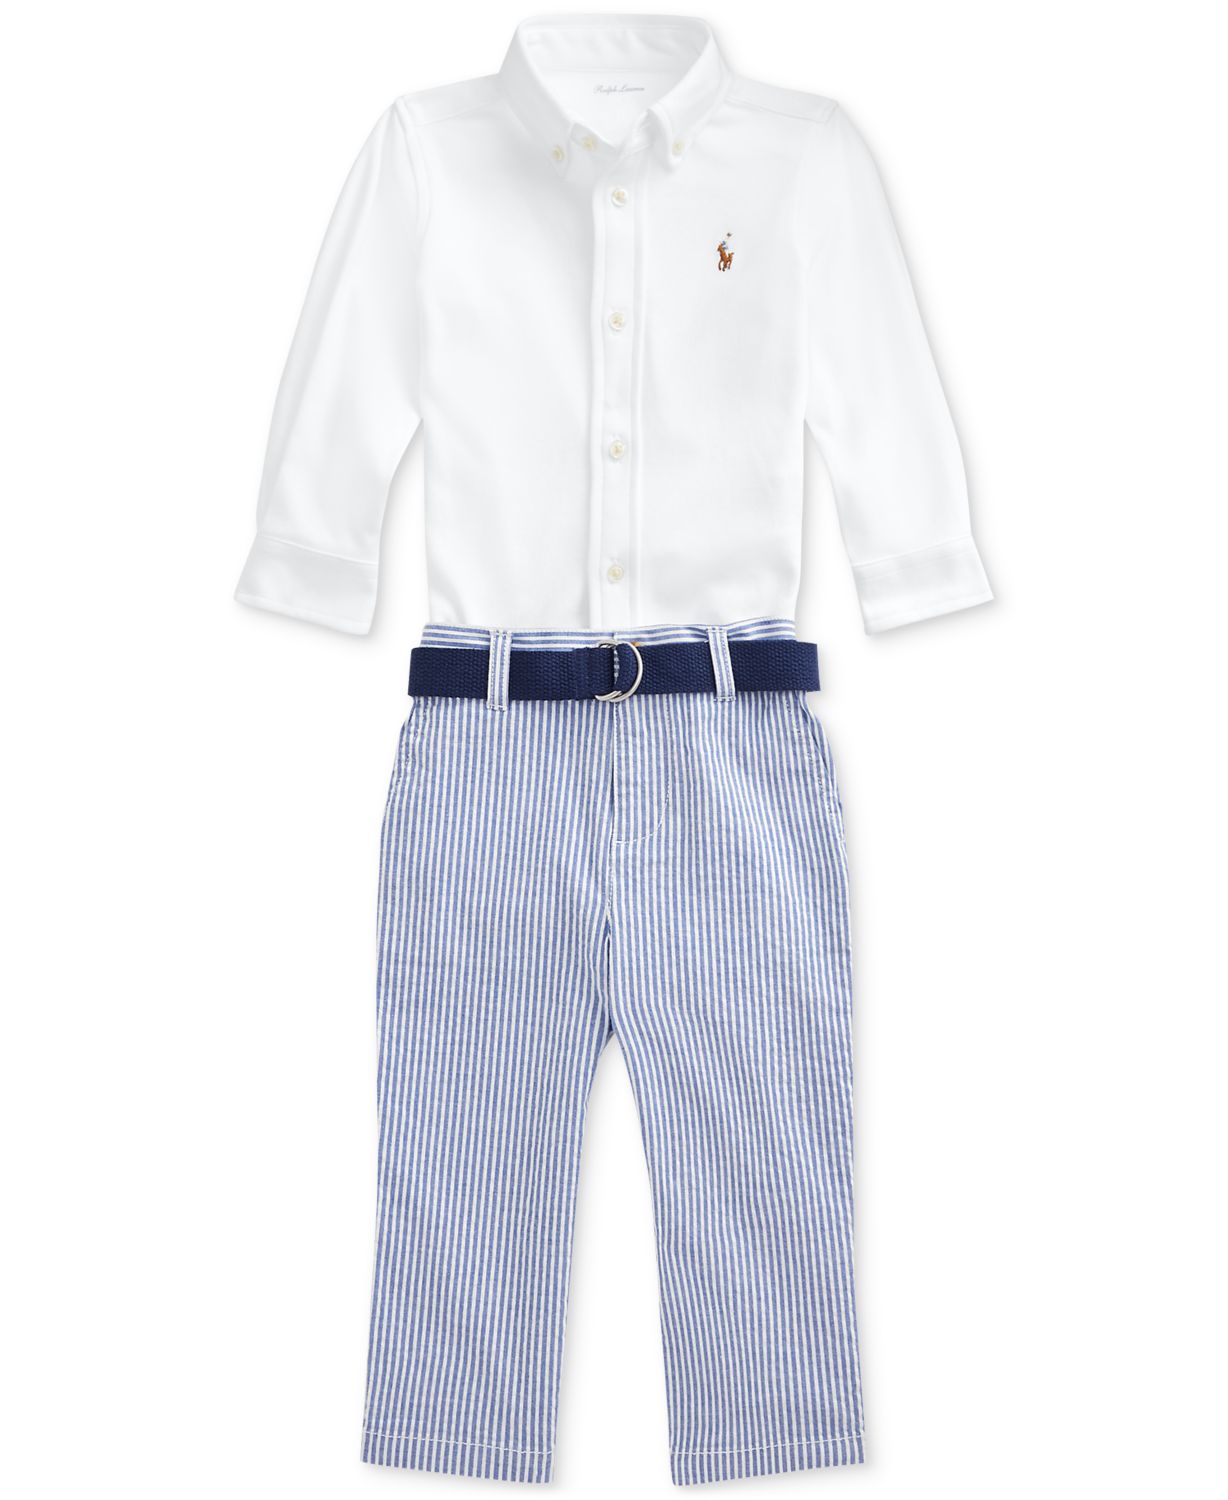 Polo Ralph Lauren Ralph Lauren Baby Boys 3-Pc. Shirt, Seersucker Pants & Belt Set & Reviews - Sets & Outfits - Kids - Macy's